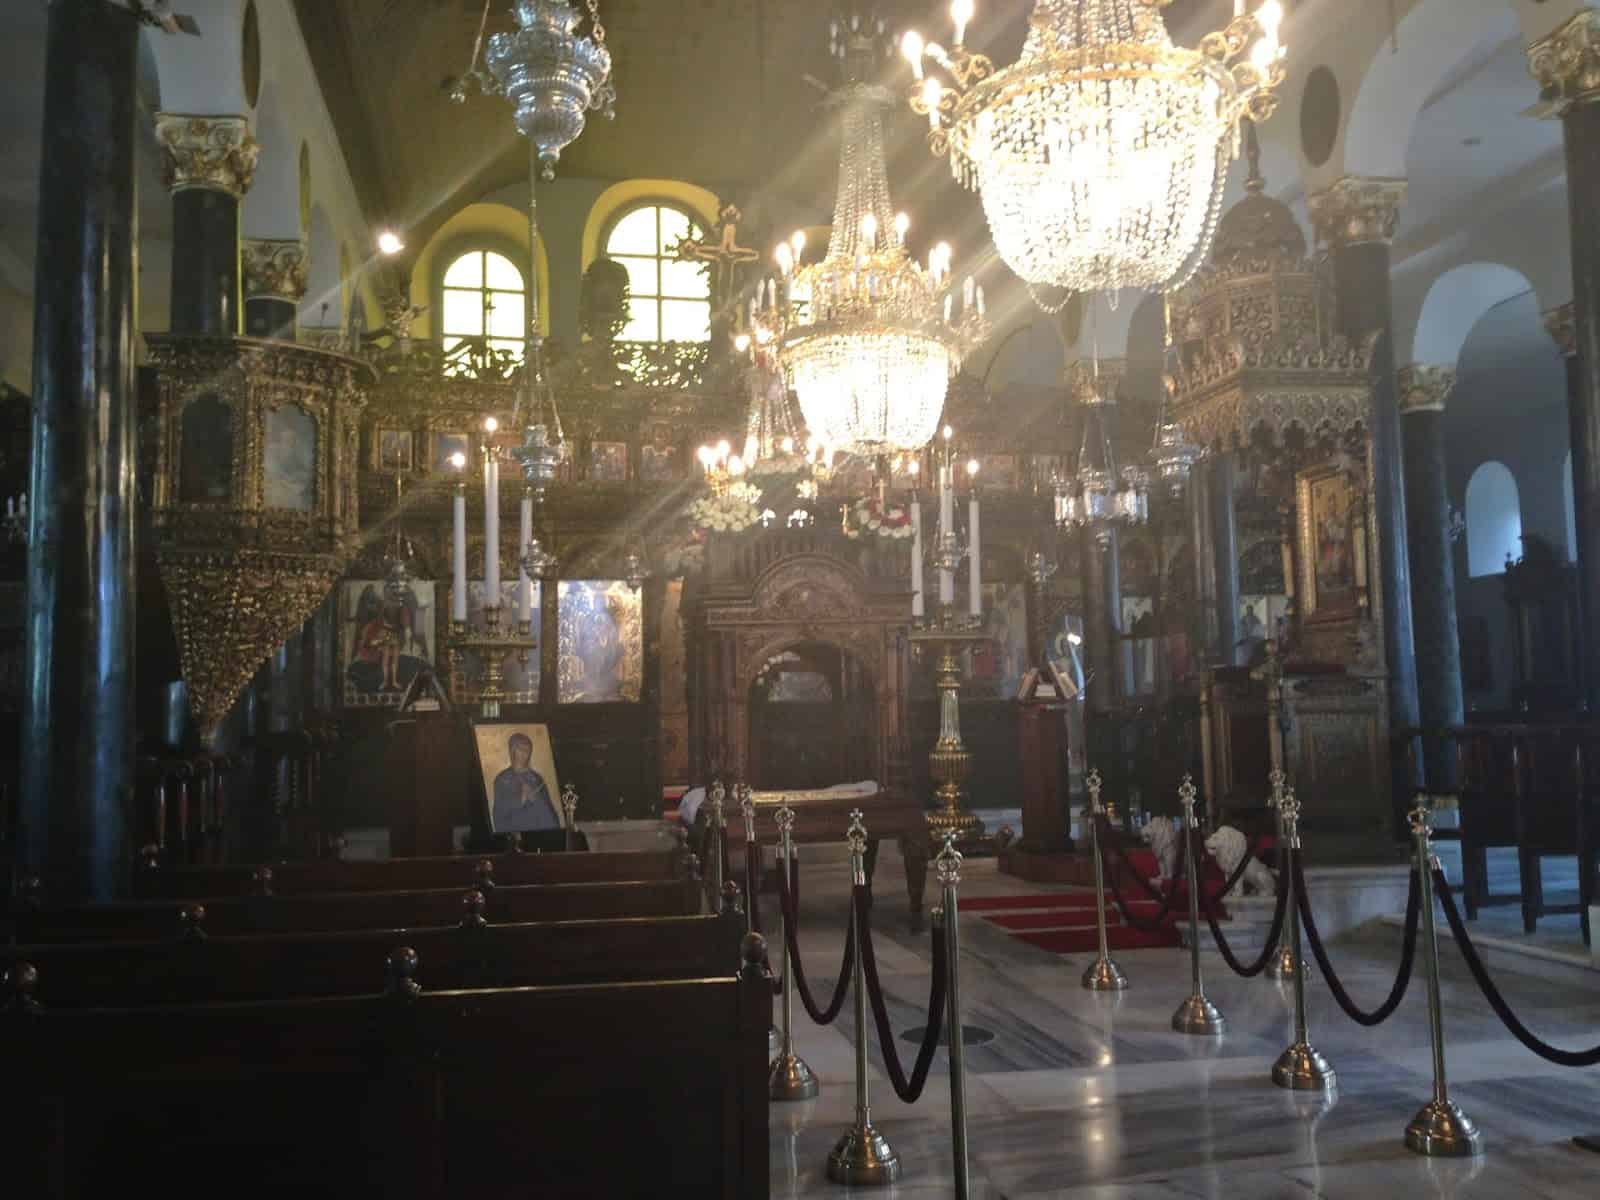 St. Demetrios Greek Orthodox Church